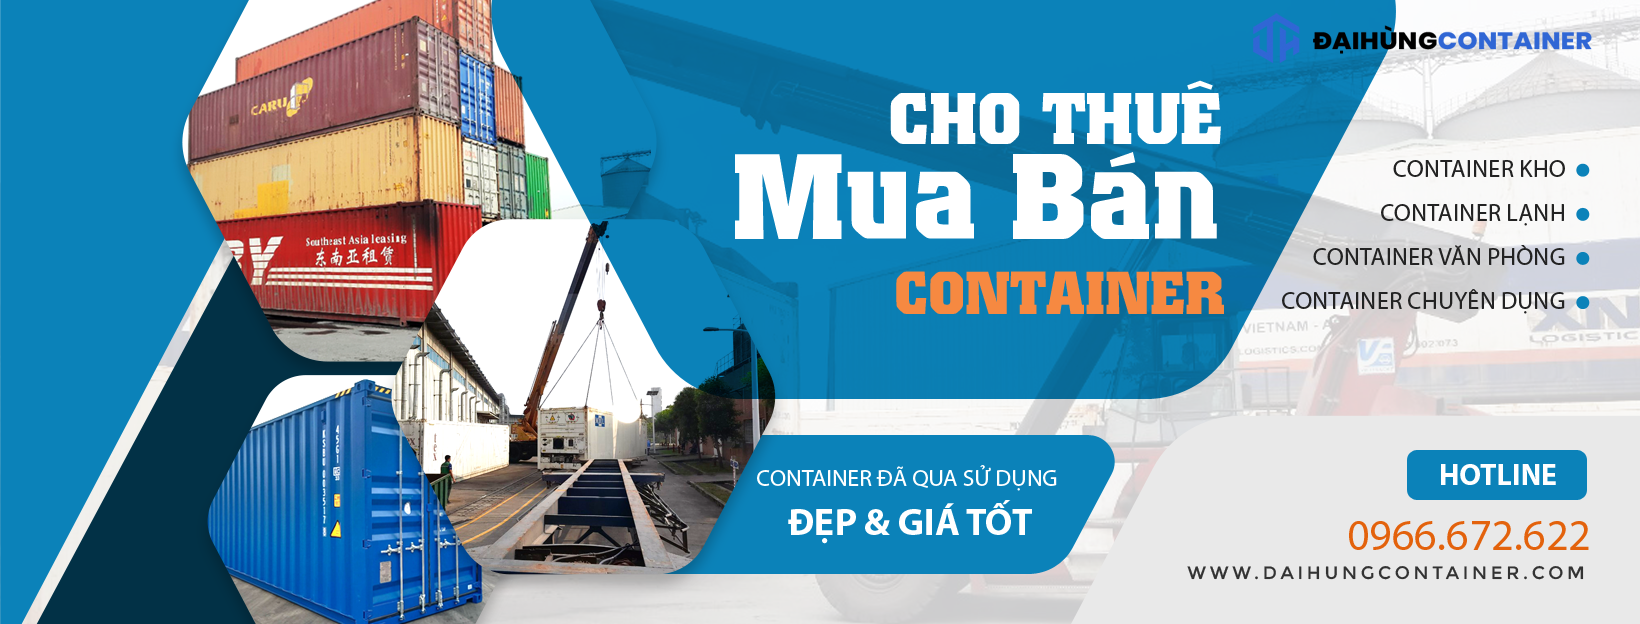 Đại Hùng Container - Đơn vị mua bán container chất lượng, giá tốt nhất Hải Phòng